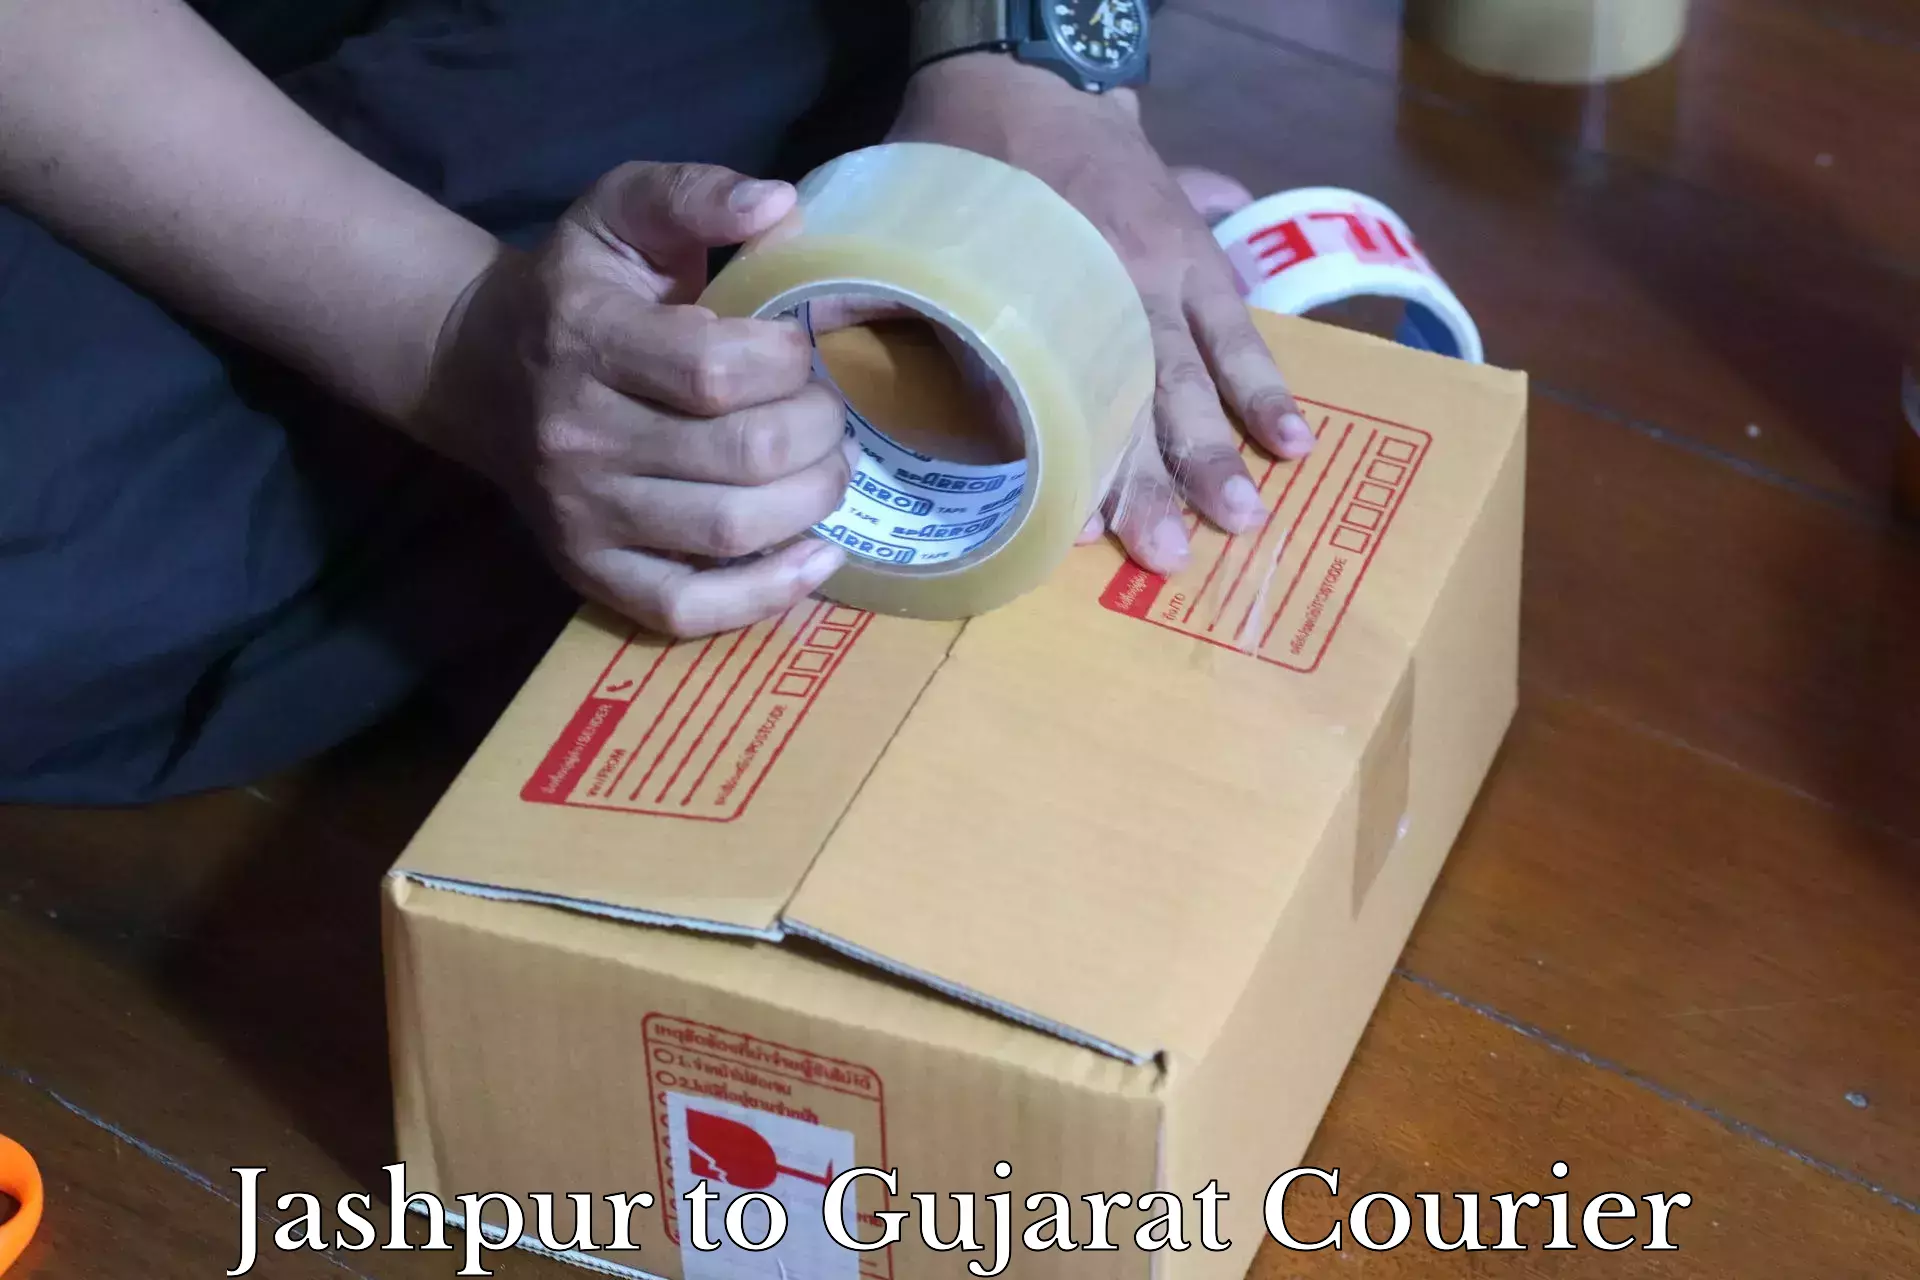 Professional parcel services Jashpur to Gujarat